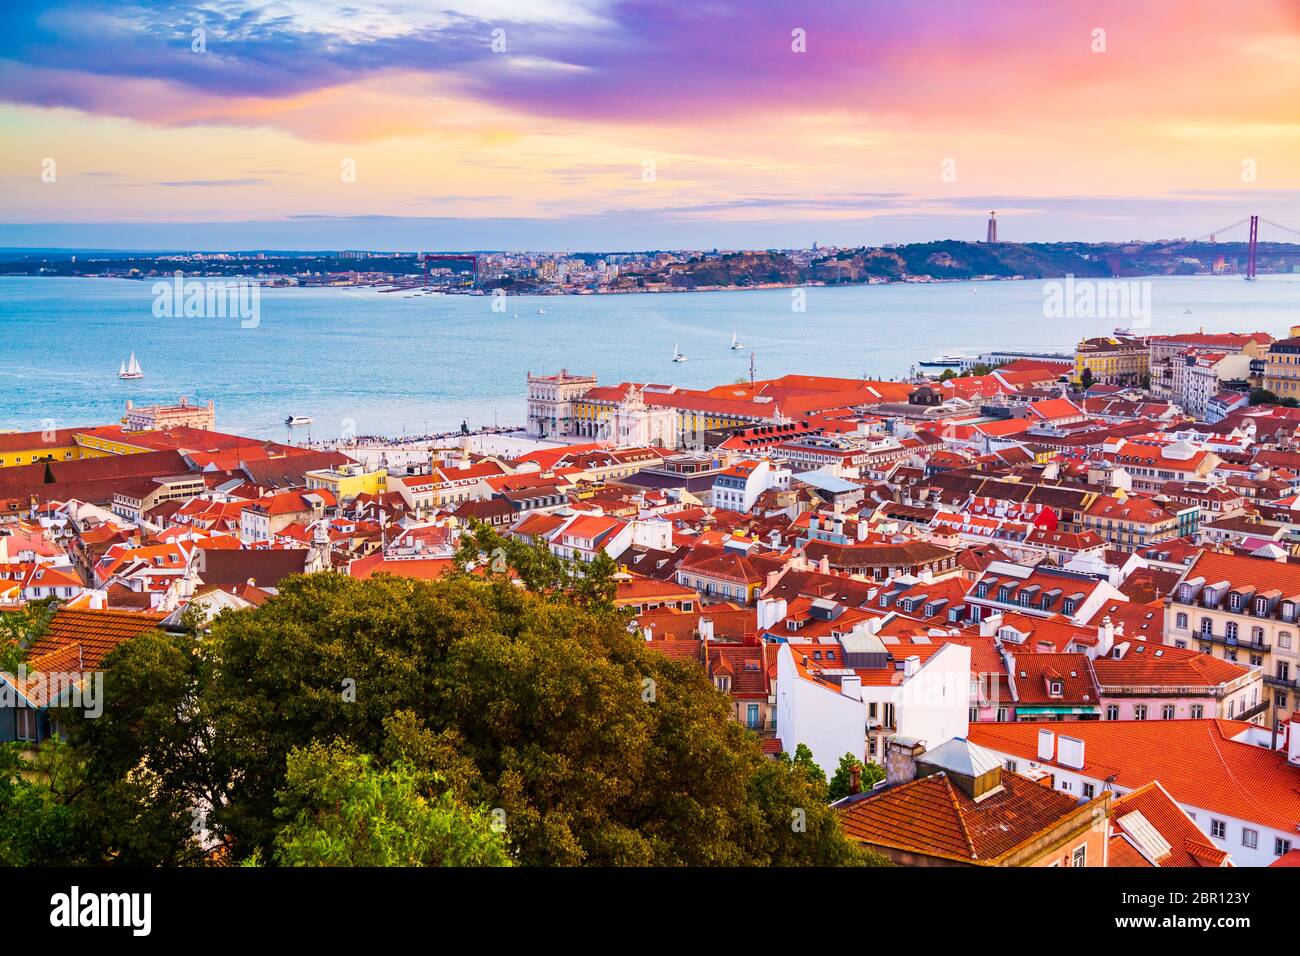 Bellissimo panorama del quartiere della città vecchia di Baixa e del fiume Tago nella città di Lisbona durante il tramonto, visto dalla collina del Castello di Sao Jorge, Portogallo Foto Stock